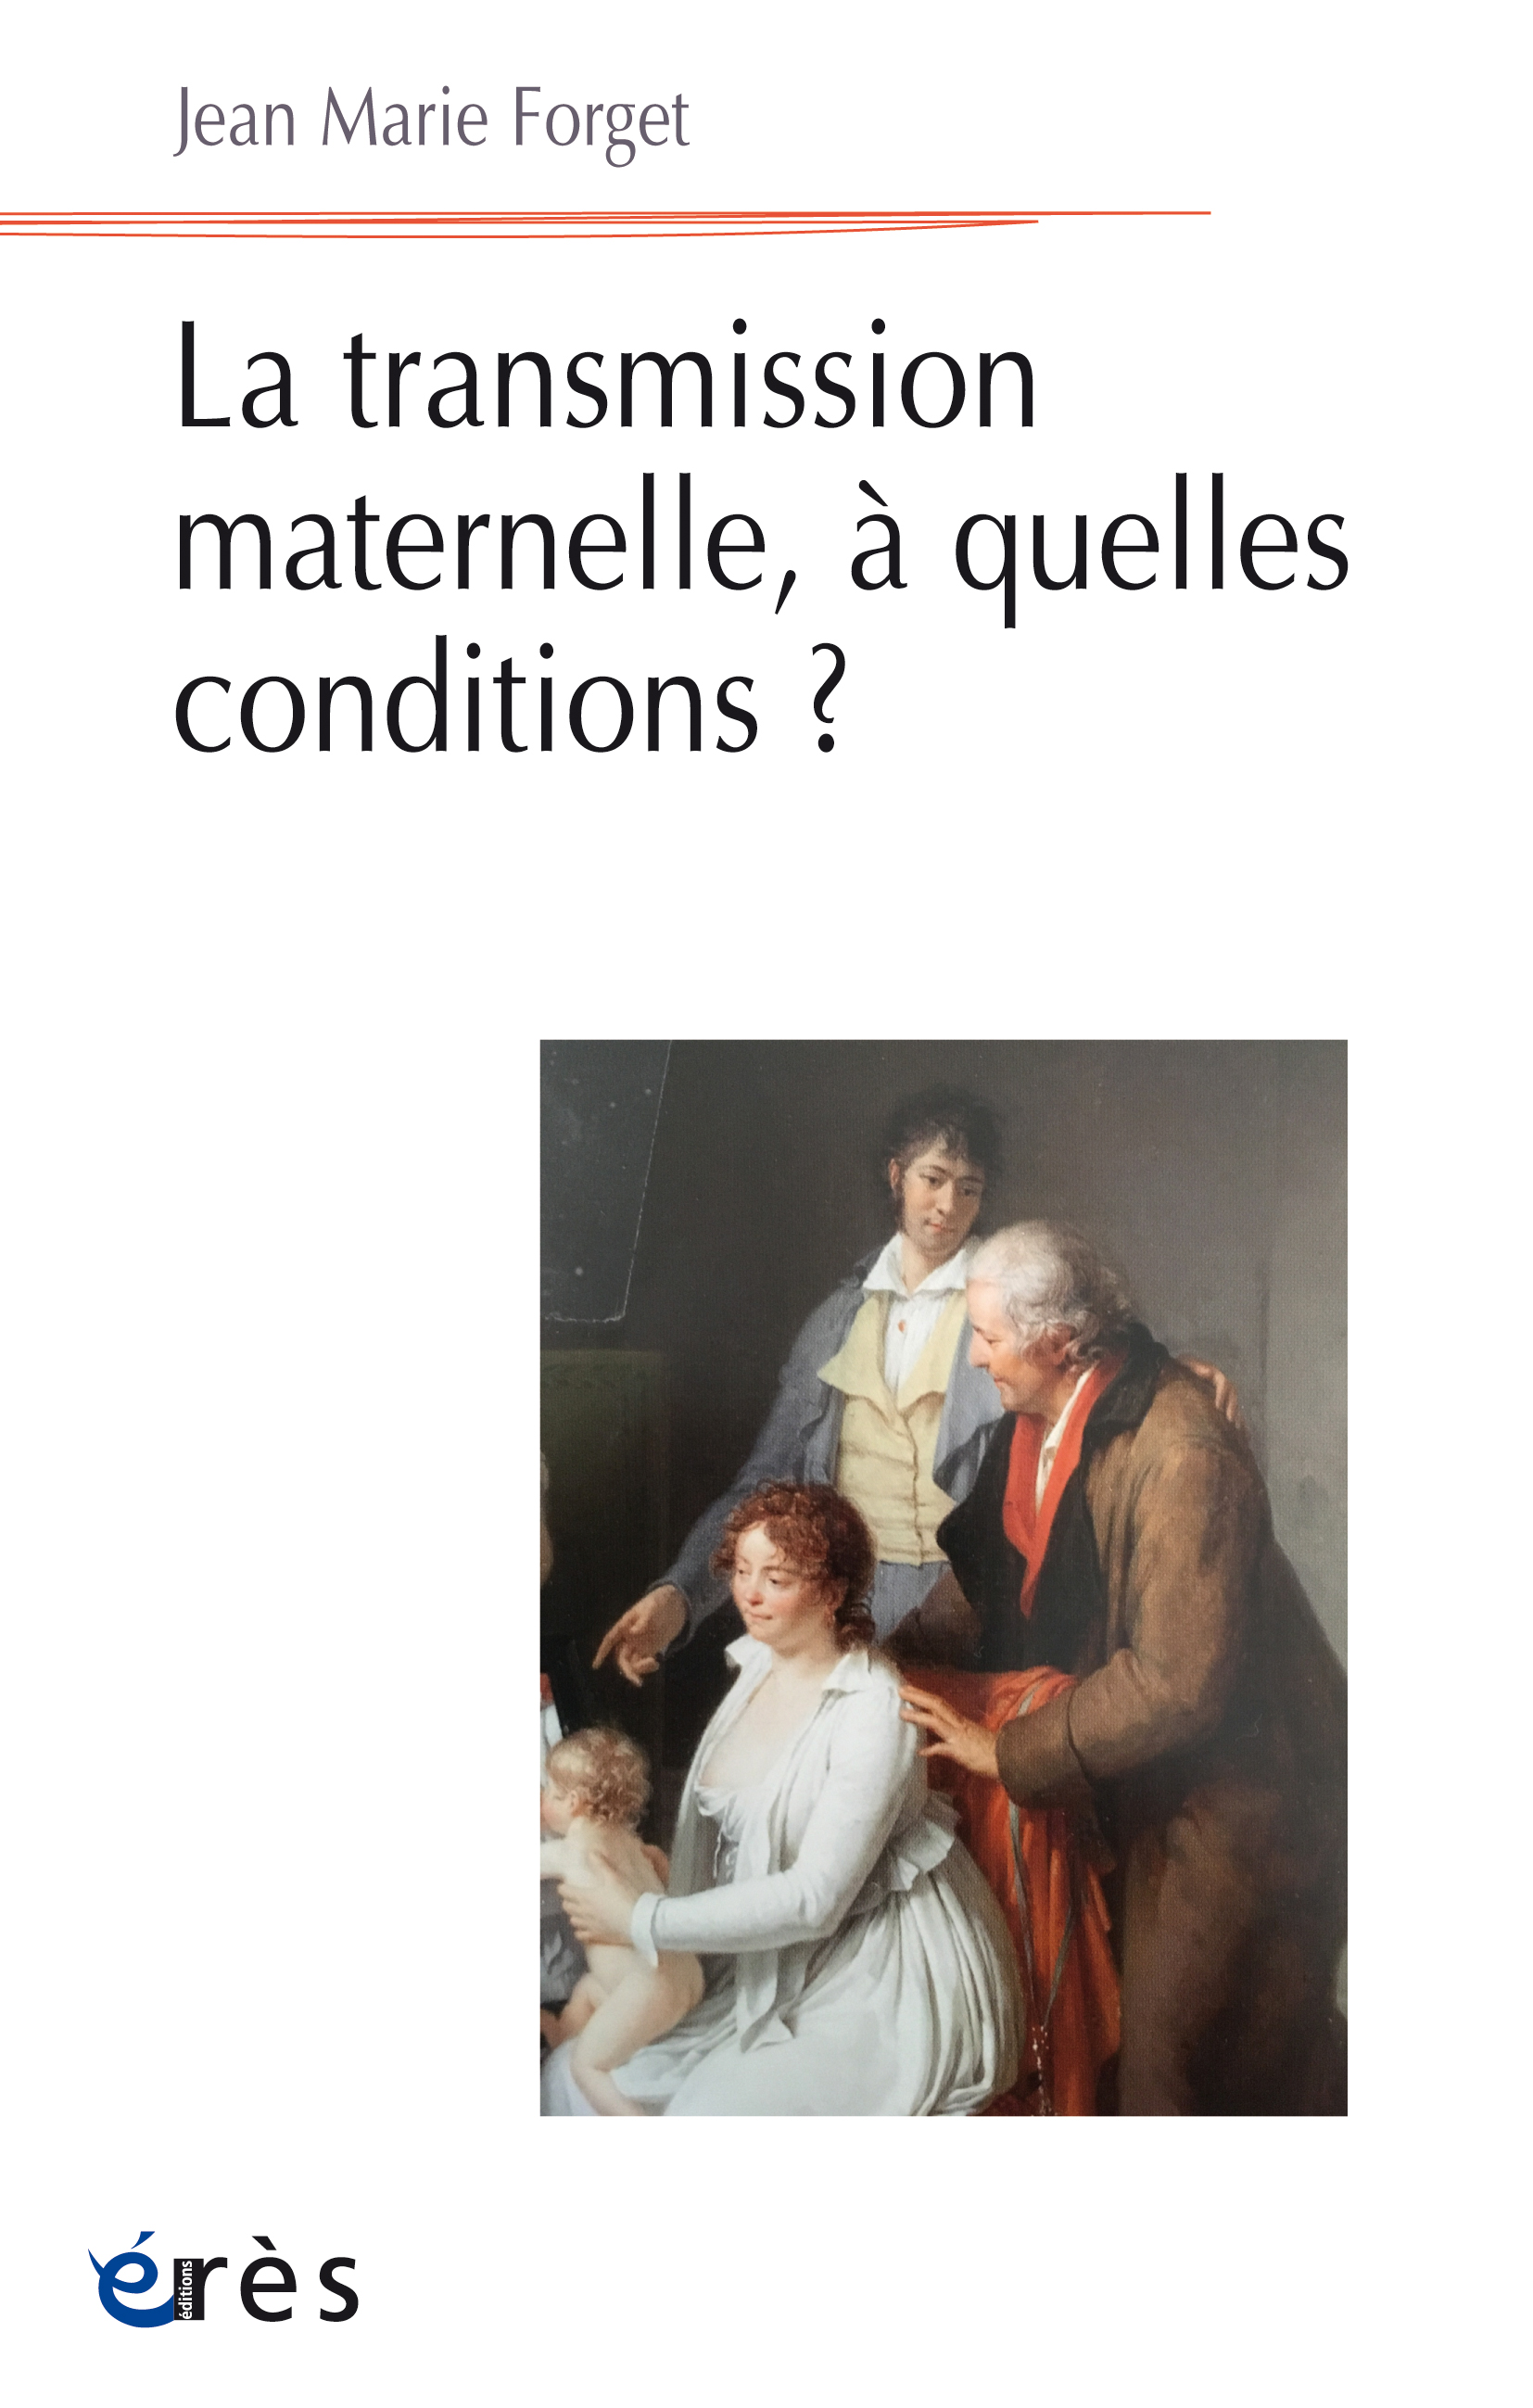 Couverture du livre "Transmission maternelle, à quelles conditions ?"